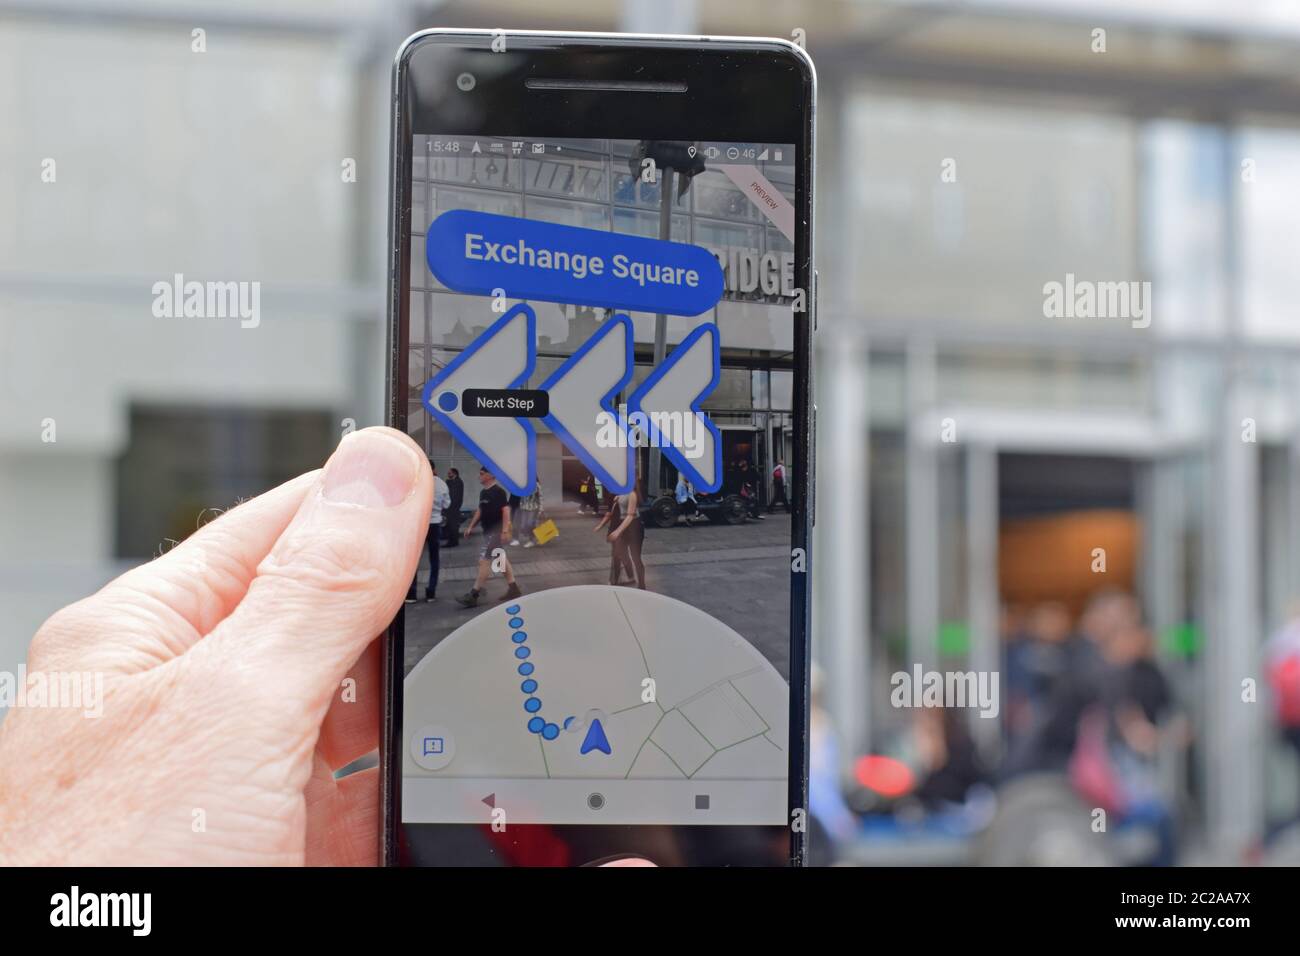 Google Maps AI auf Pixel 2 in Richtungen Modus. App zeigt Geschäfte und Pfeile mit Fahrtrichtung an. Der nächste Schritt ist in Richtung Exchange Square. Stockfoto